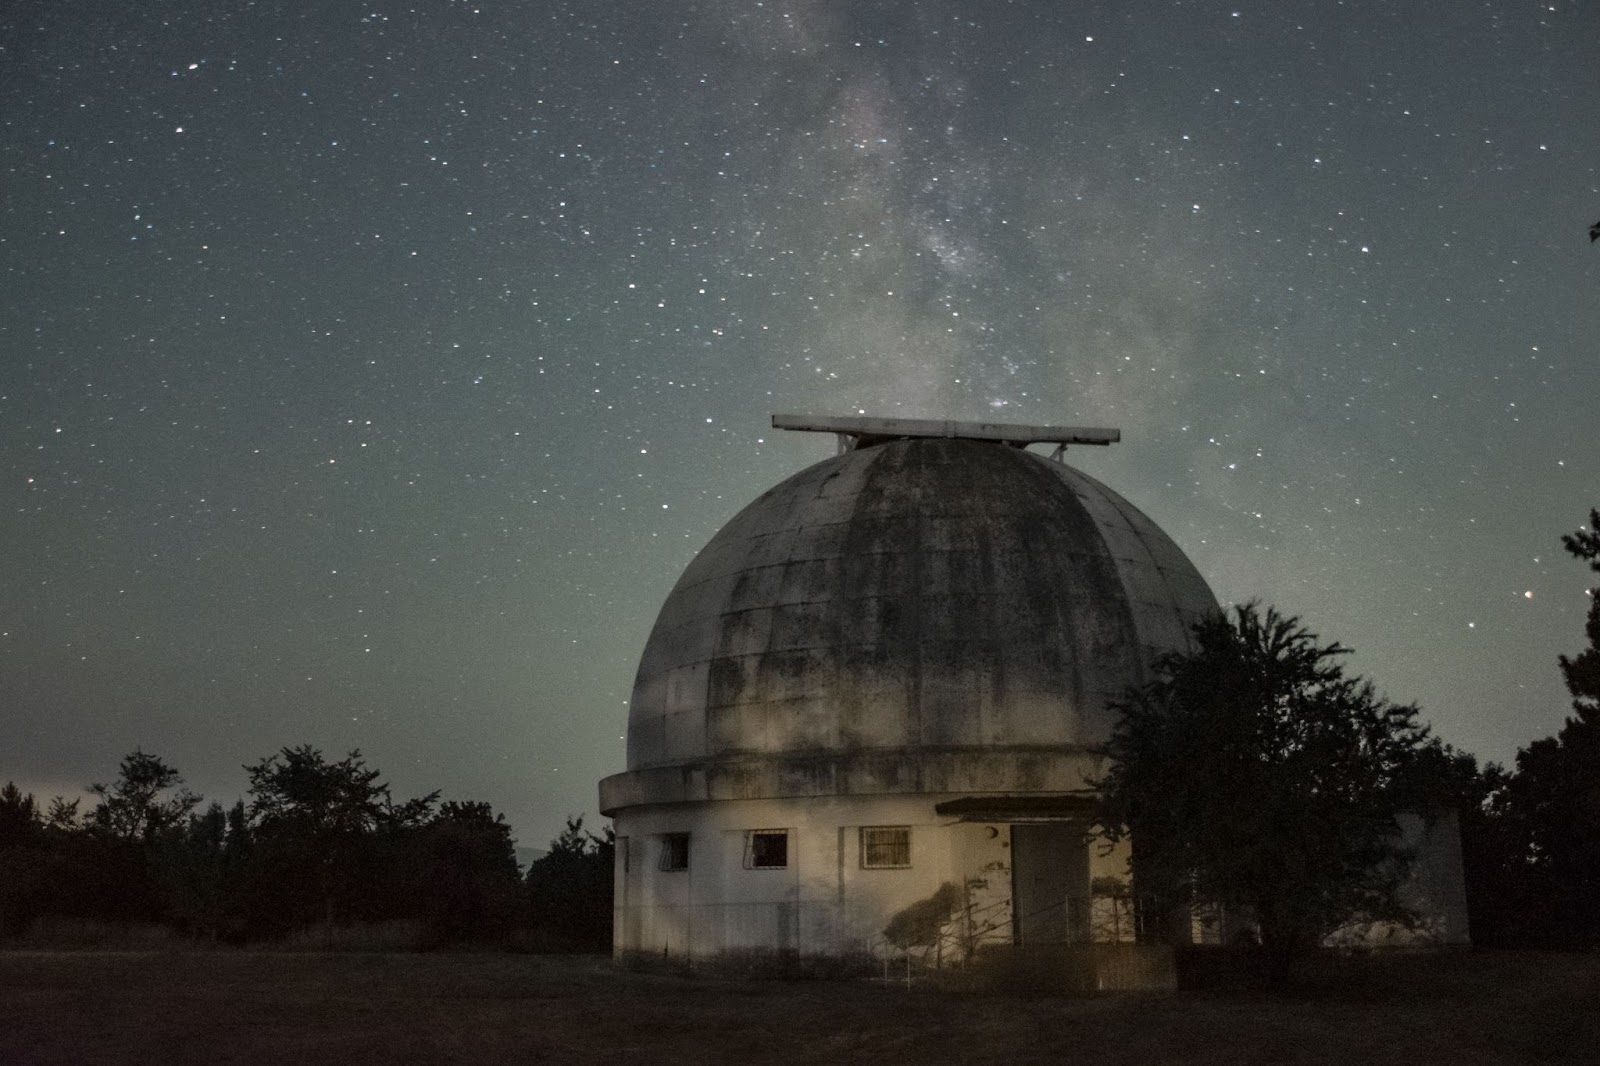 Крымская астрофизическая обсерватория проводит исследования в области фундаментальной науки. Такое дело — весьма затратное начинание, которое не гарантирует практического результата здесь и сейчас.